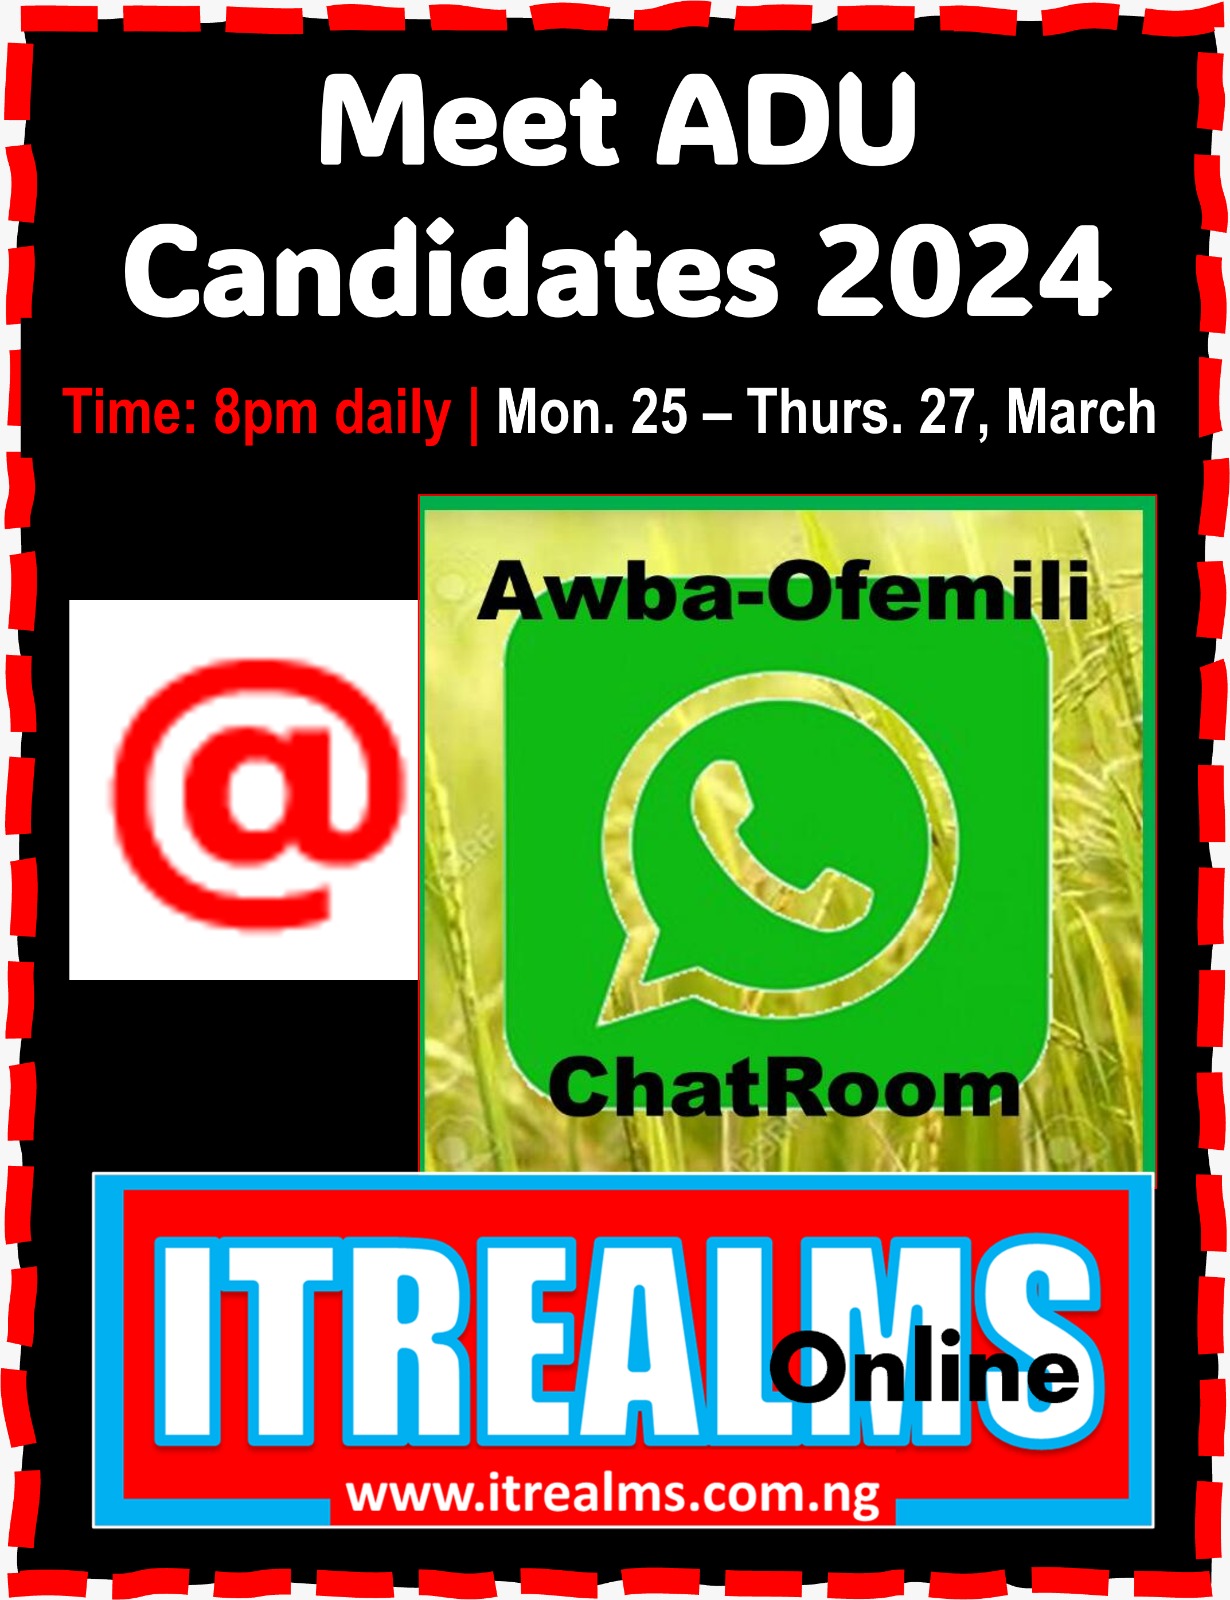 ITREALMS, Awba-Ofemili Chatroom Partner on Meet ADU Candidates’24